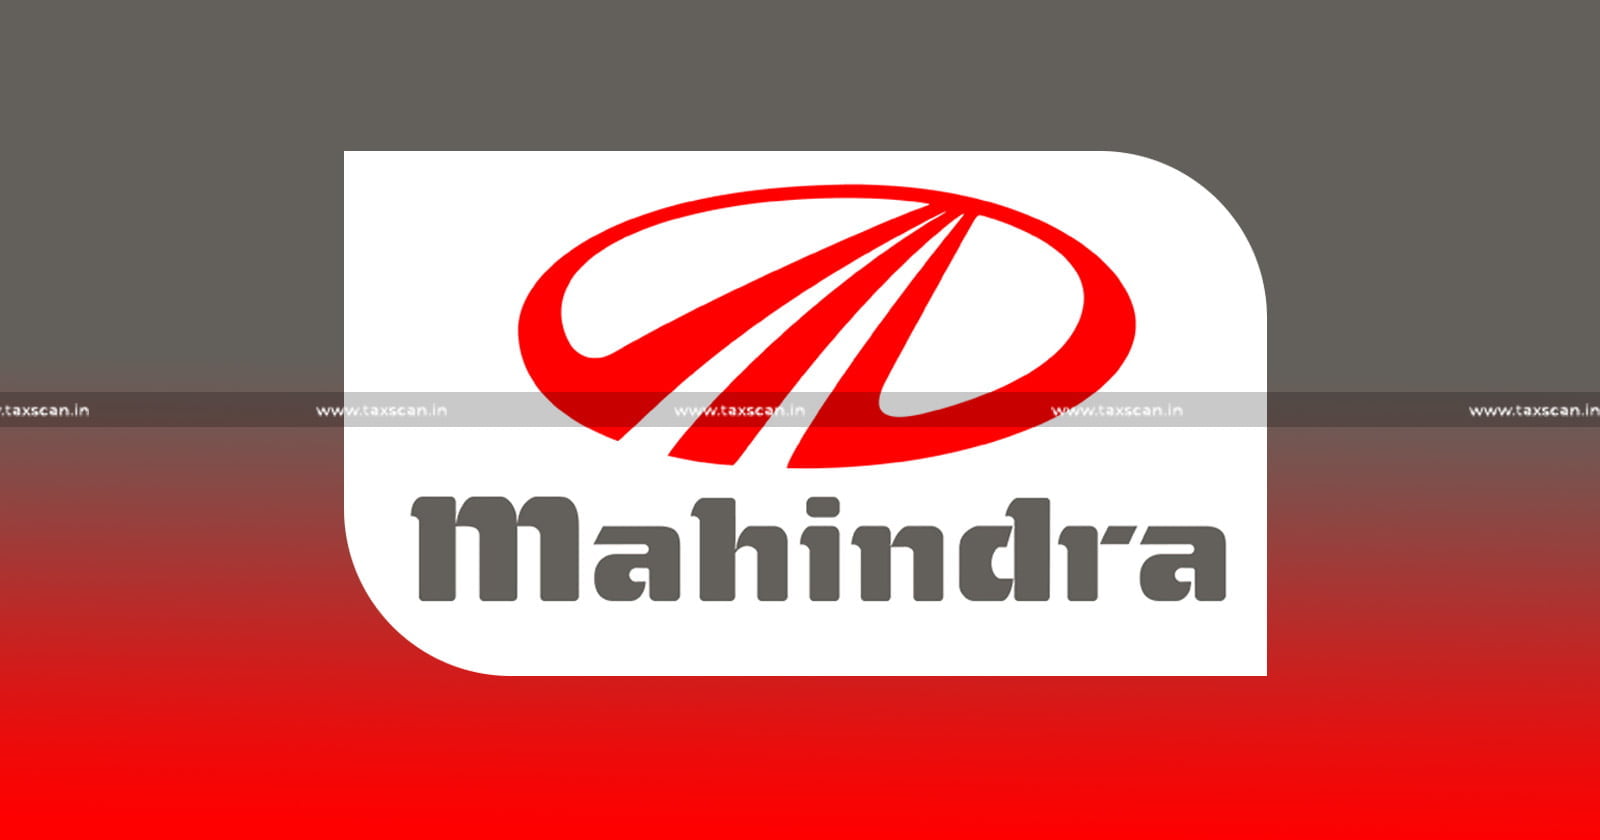 CA - MBA Vacancy - Mahindra - jobscan